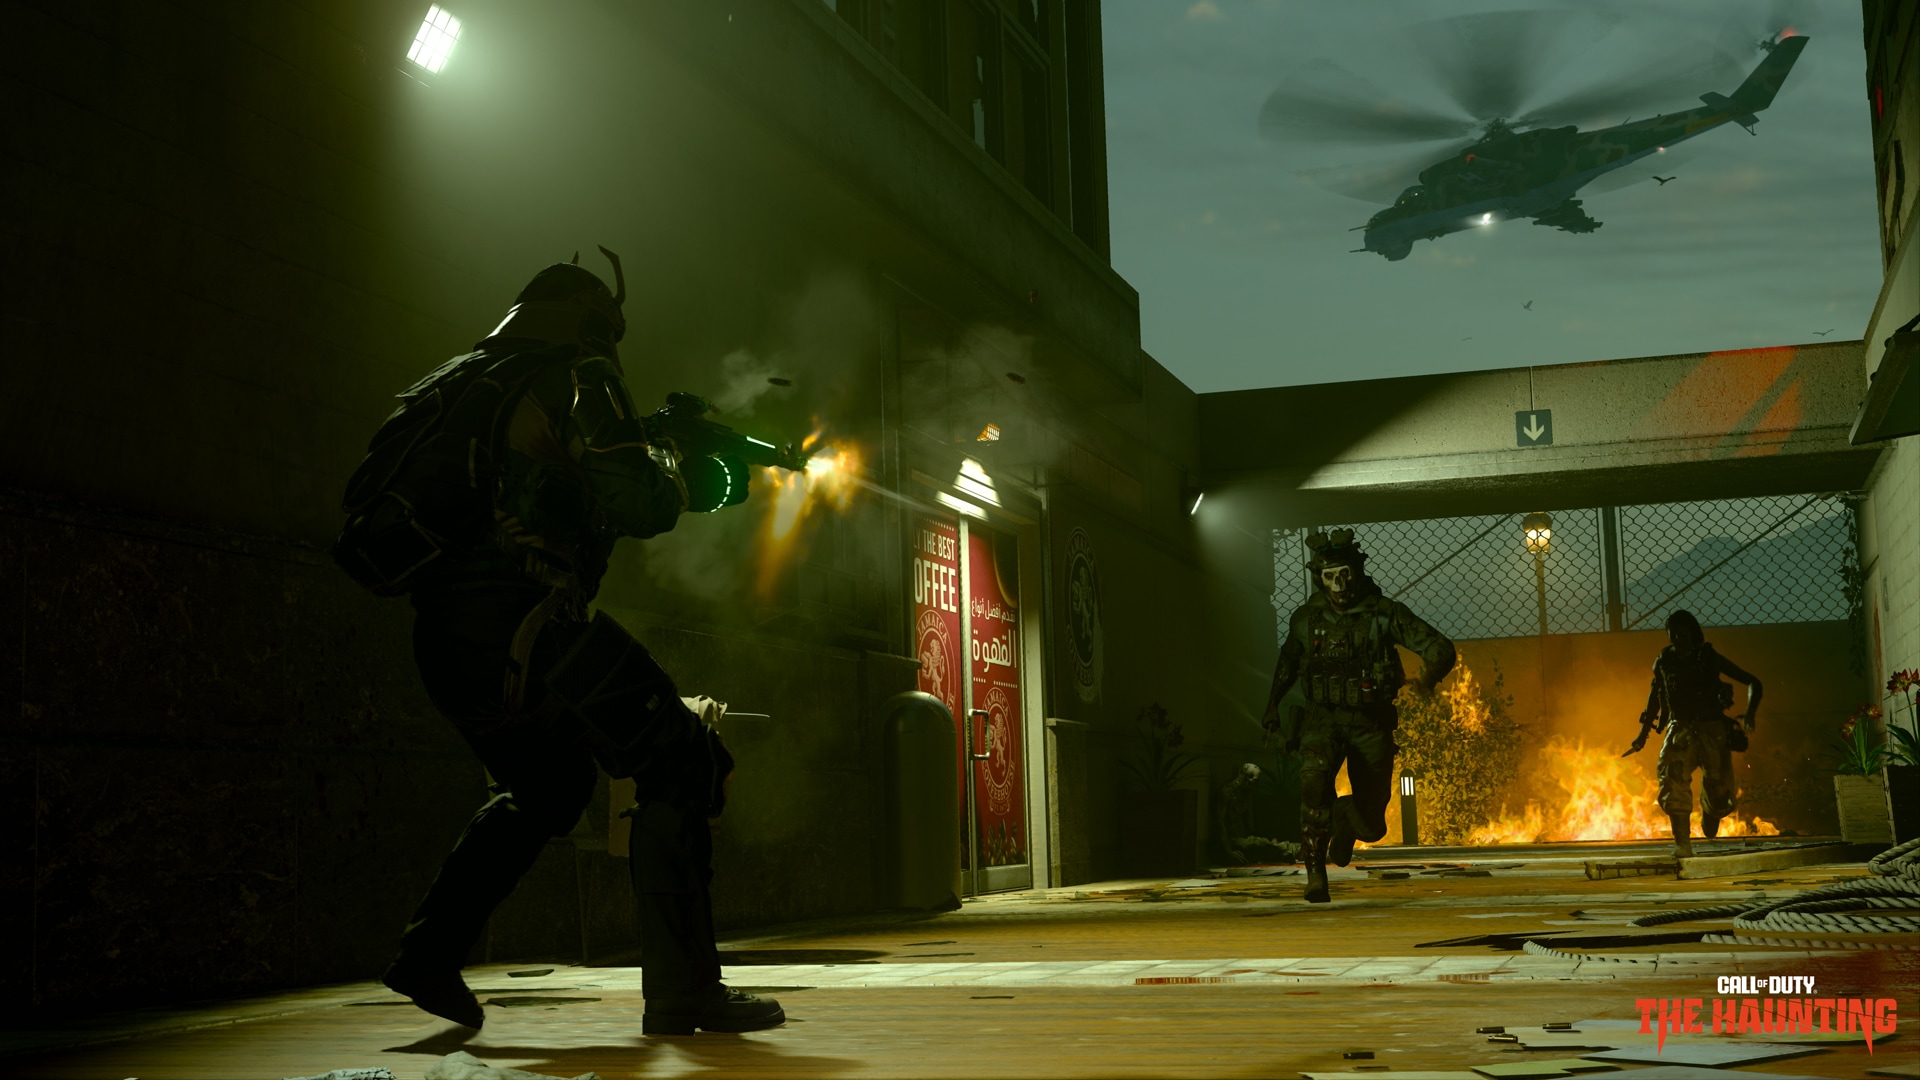 Alucard from Hellsing enters Call of Duty Modern Warfare 2